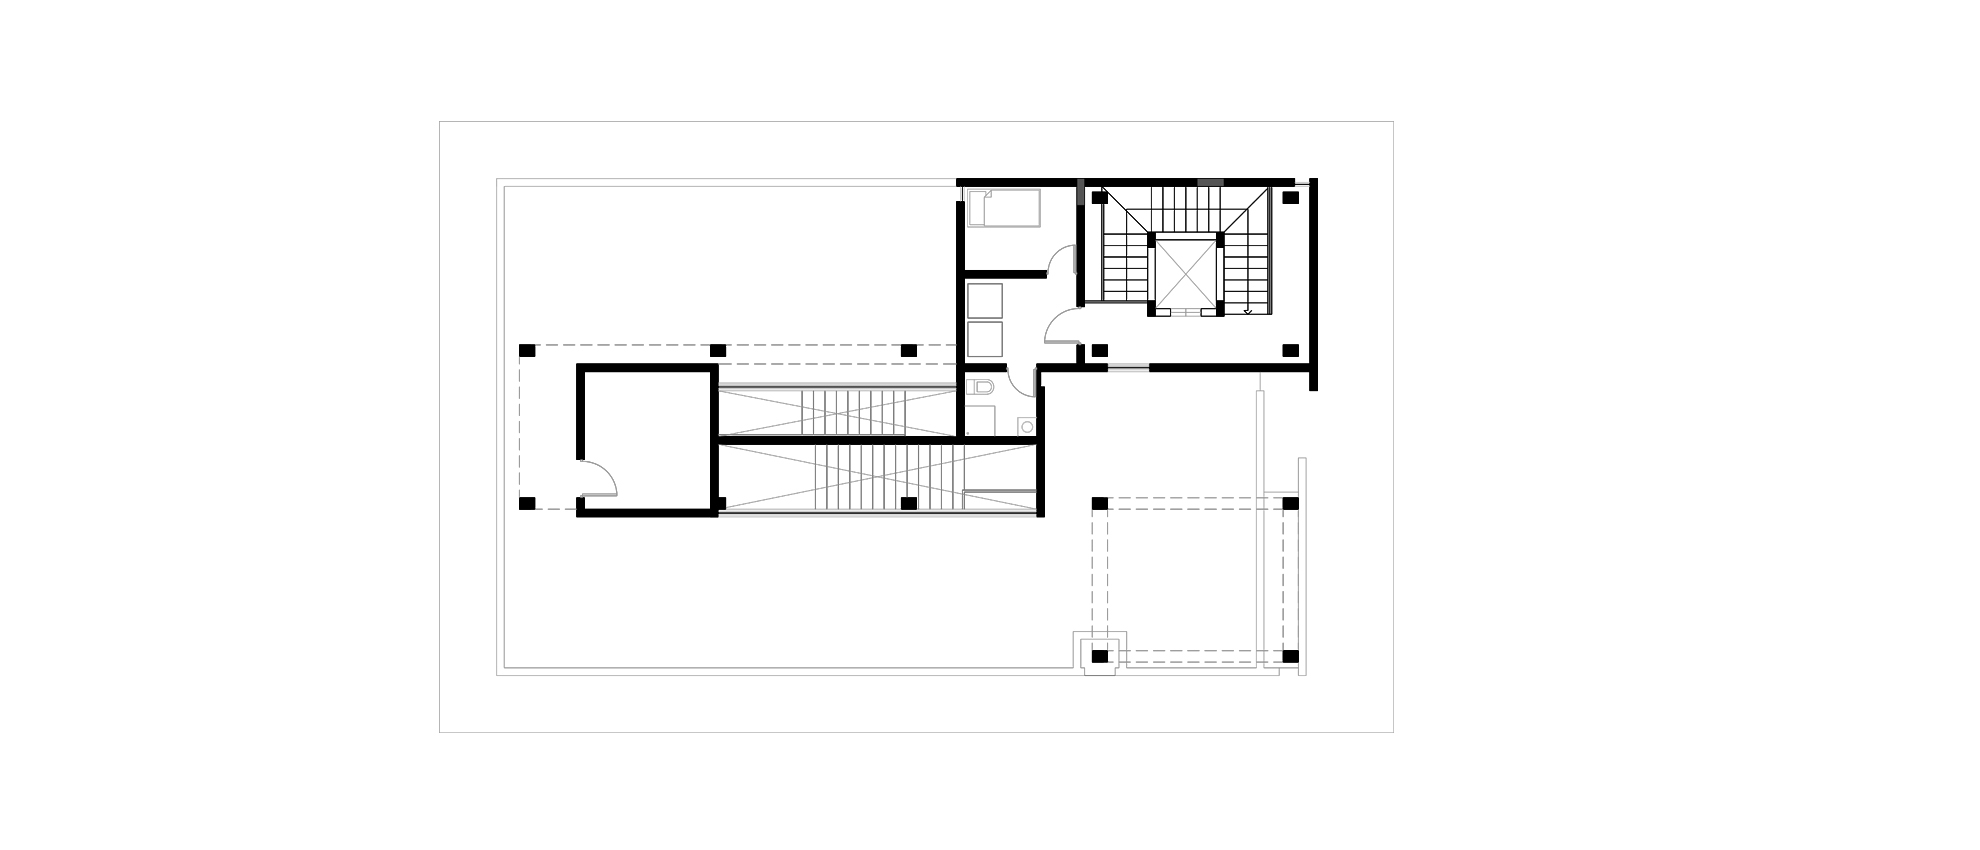 1Roof Floor Plan